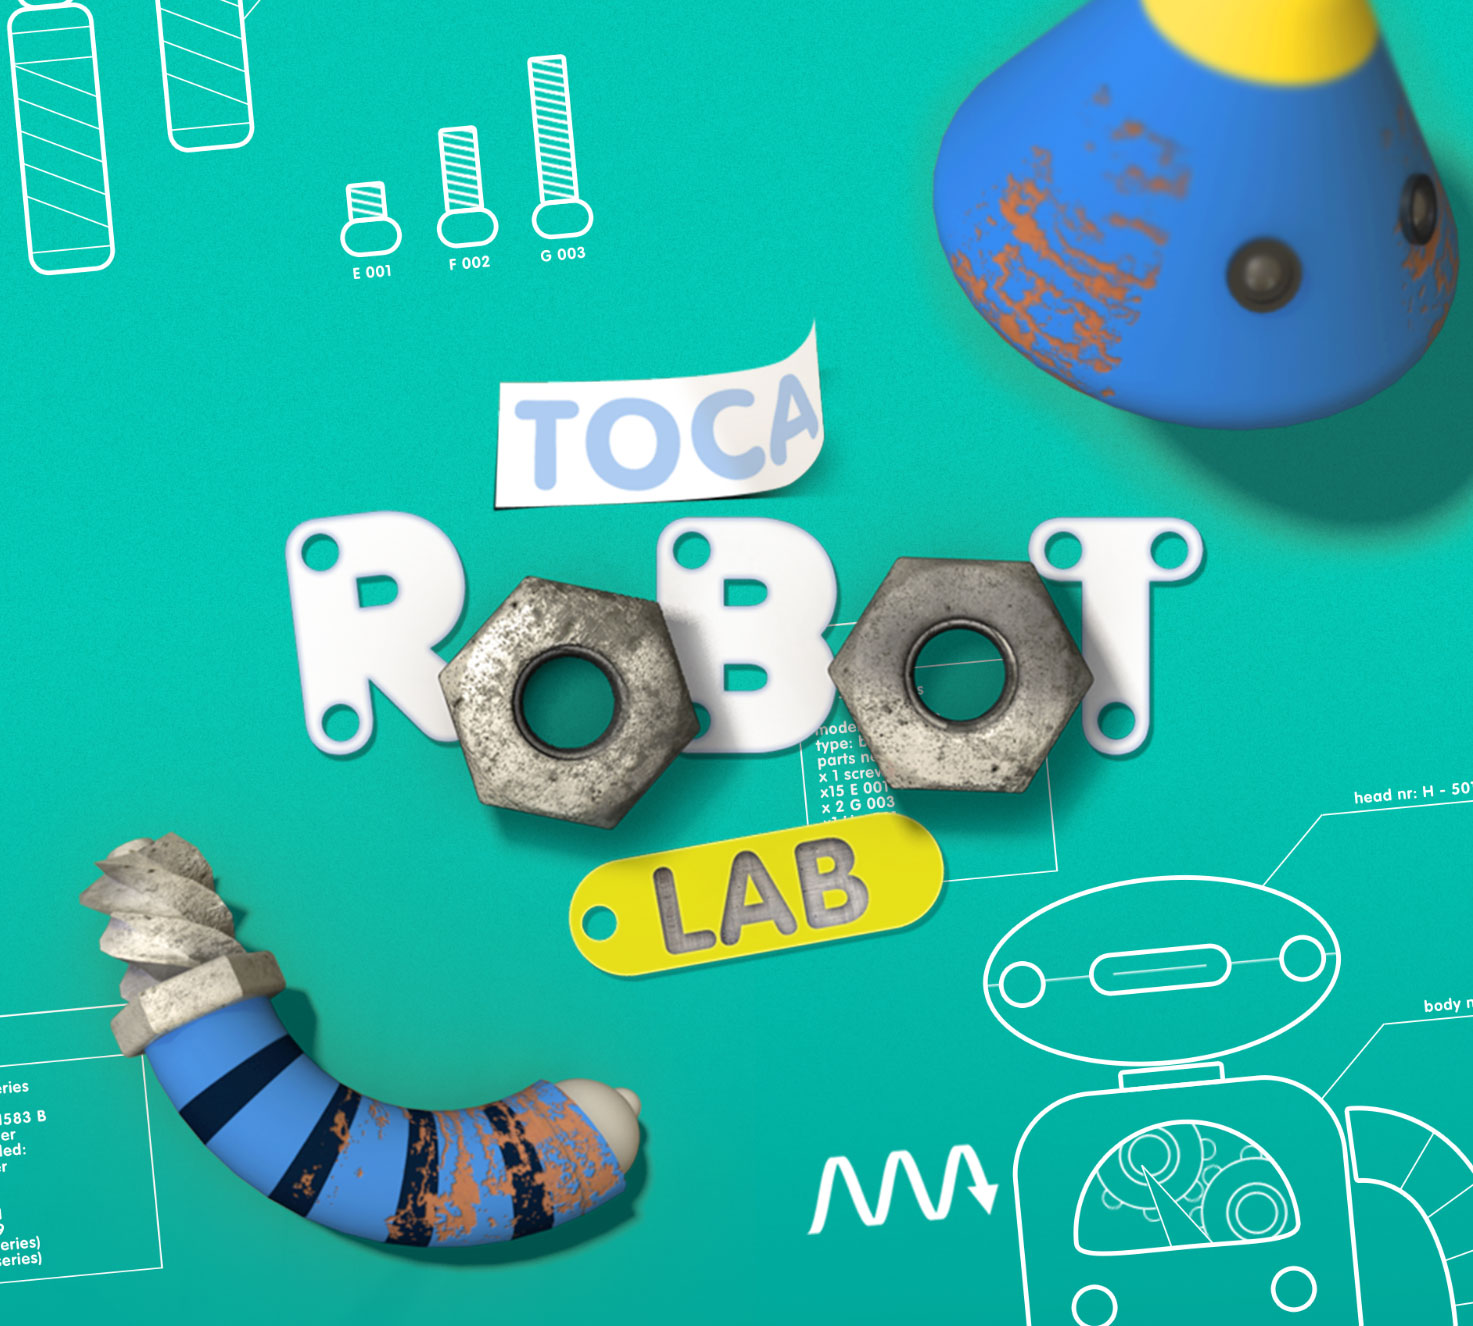 عروض اليوم على App Store: Toca Robot Lab و Toca Kitchen و NodeBeat والمزيد!